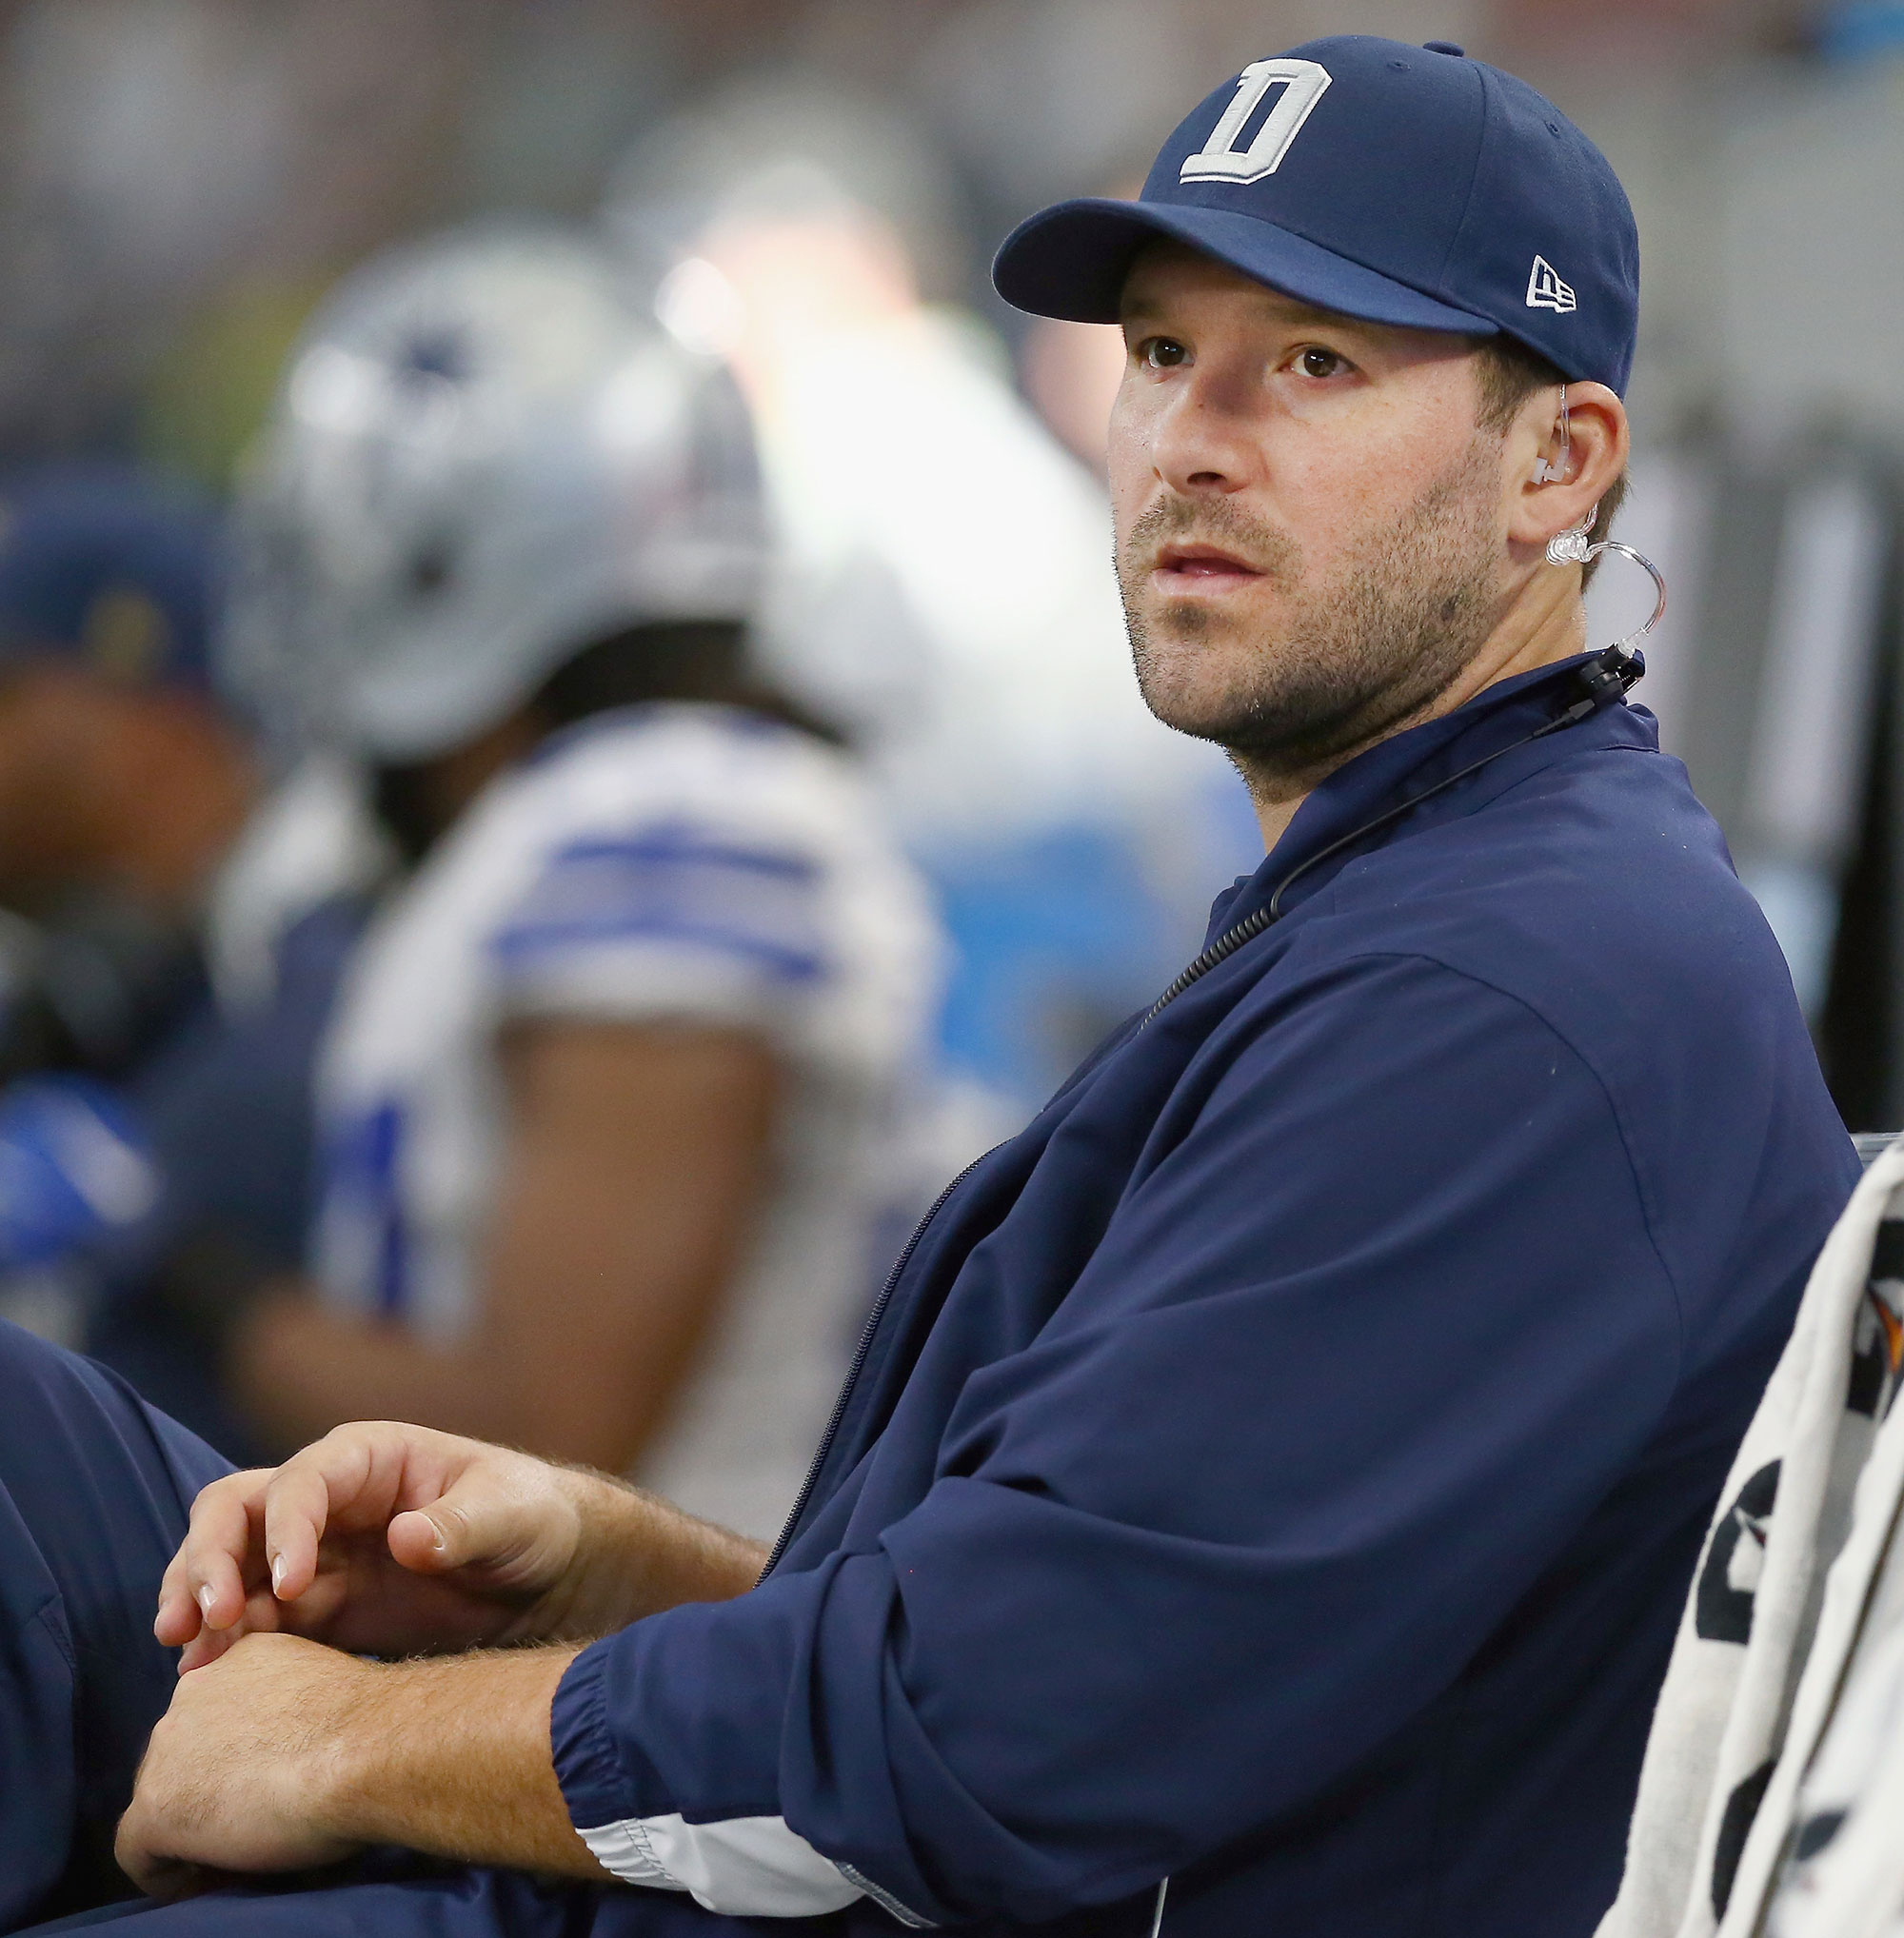 Tony Romo Looks Heavier at Cowboys Training Camp, Twitter Reacts